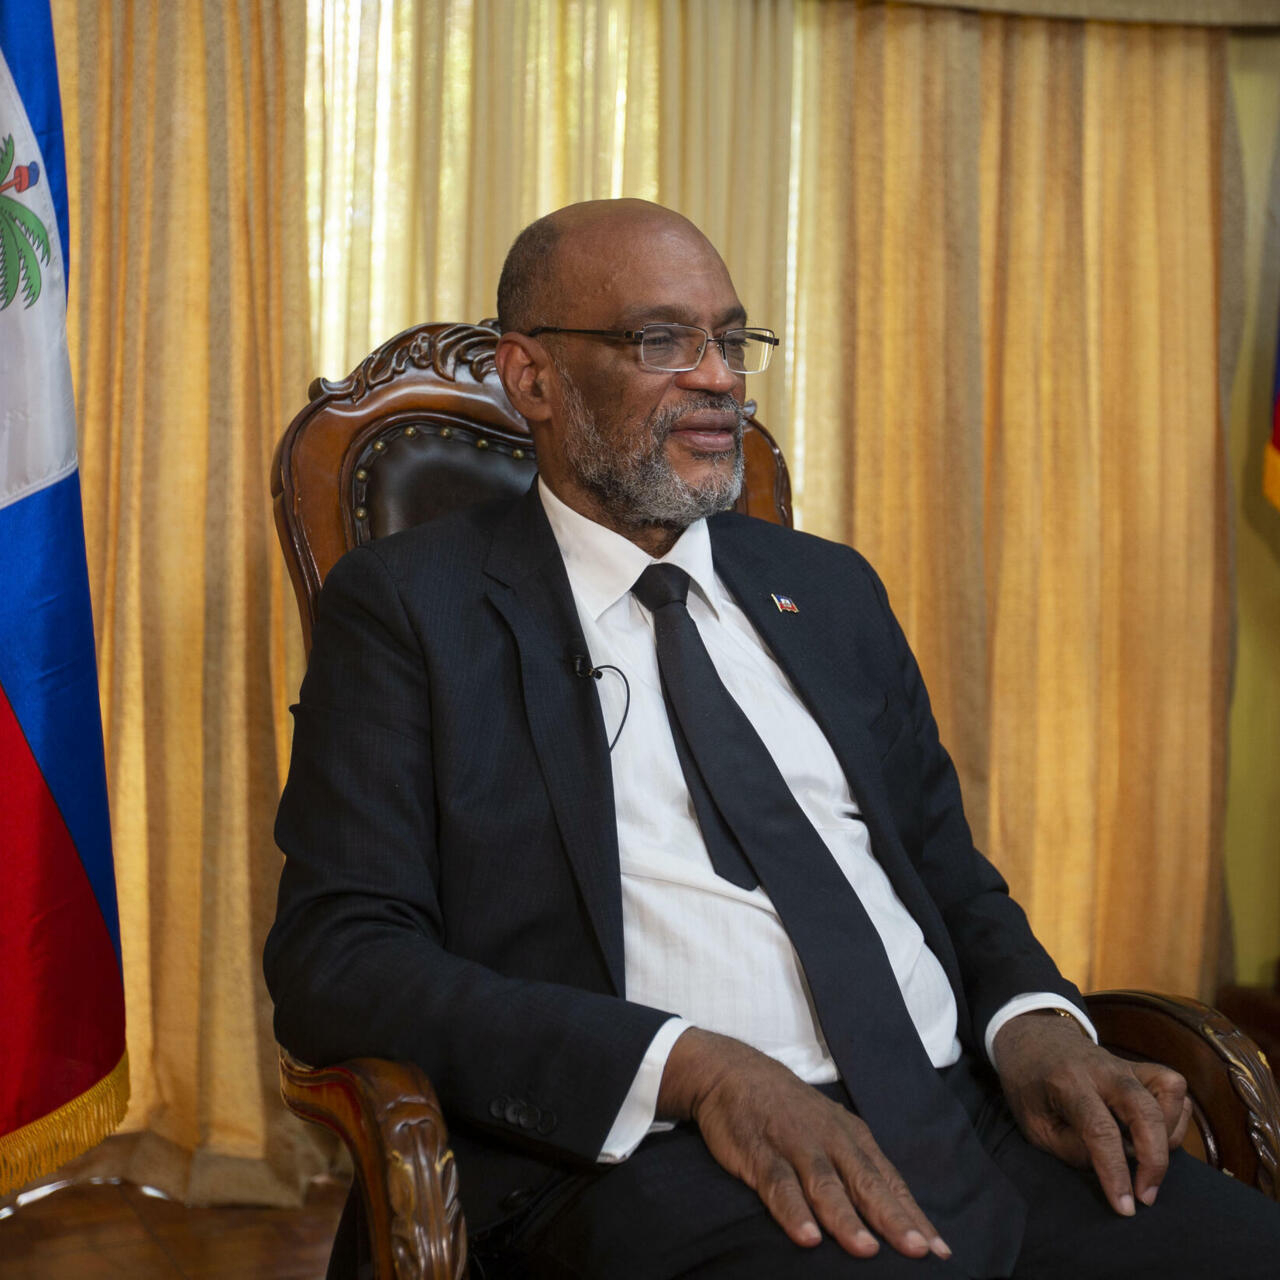 Haïti - Le premier ministre Ariel Henry démissionne, espoir d’apaisement